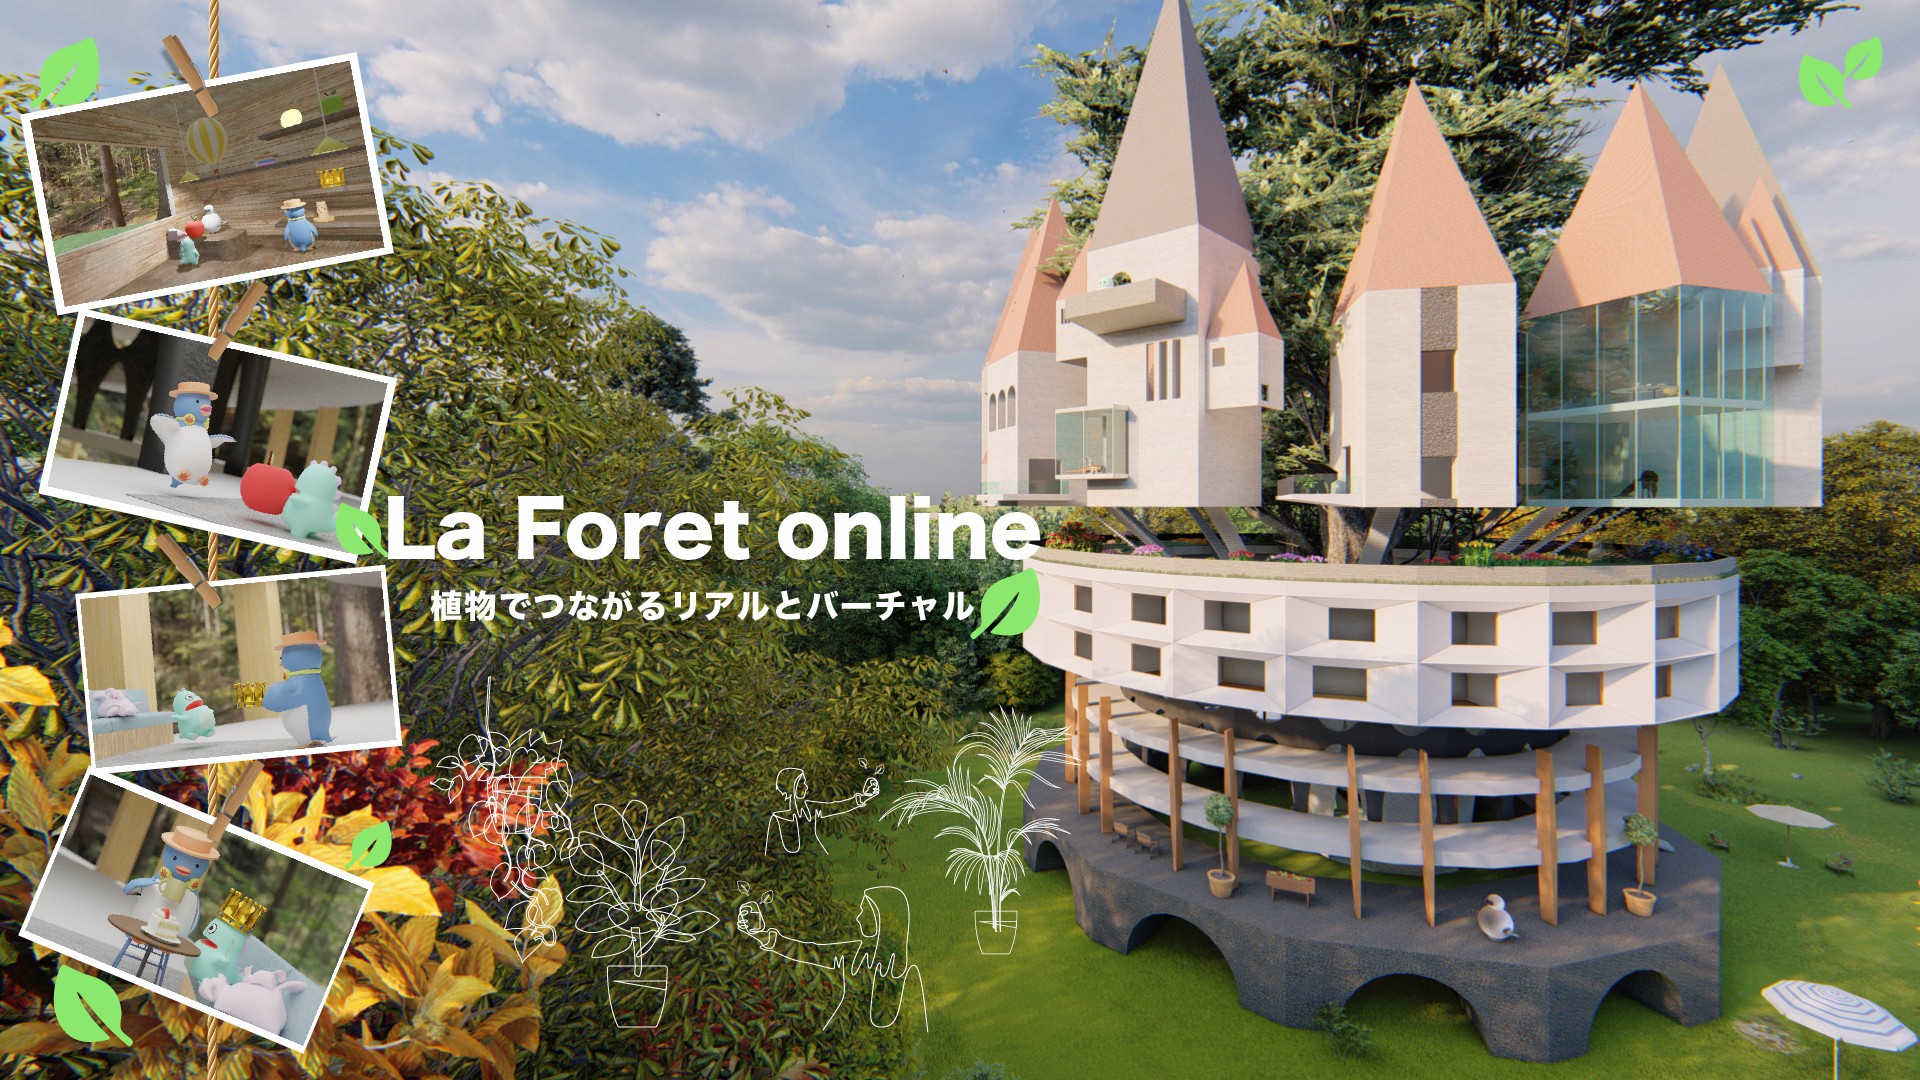 La Foret online _ 植物でつながるリアルとバーチャル